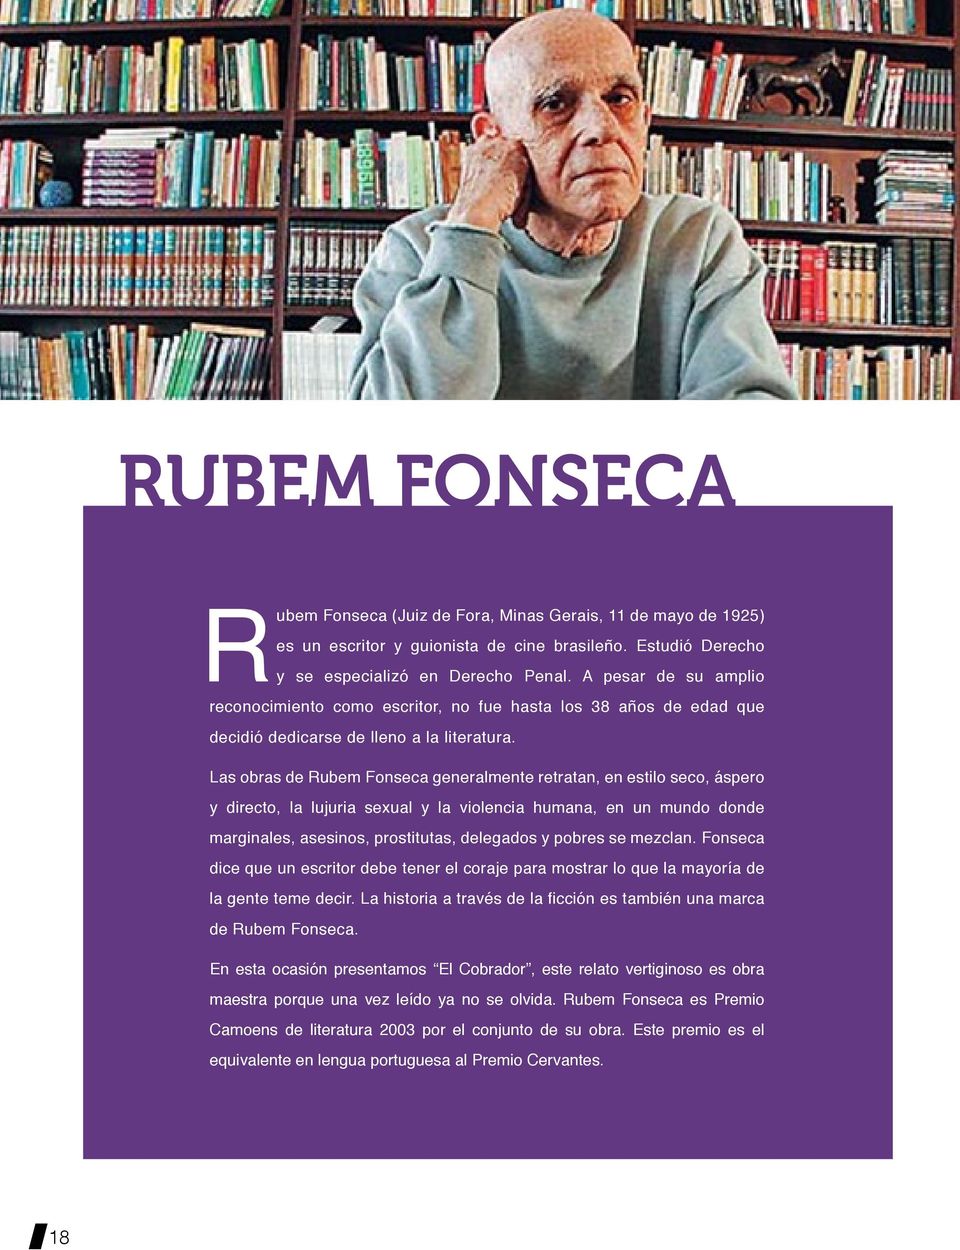 Las obras de Rubem Fonseca generalmente retratan, en estilo seco, áspero y directo, la lujuria sexual y la violencia humana, en un mundo donde marginales, asesinos, prostitutas, delegados y pobres se